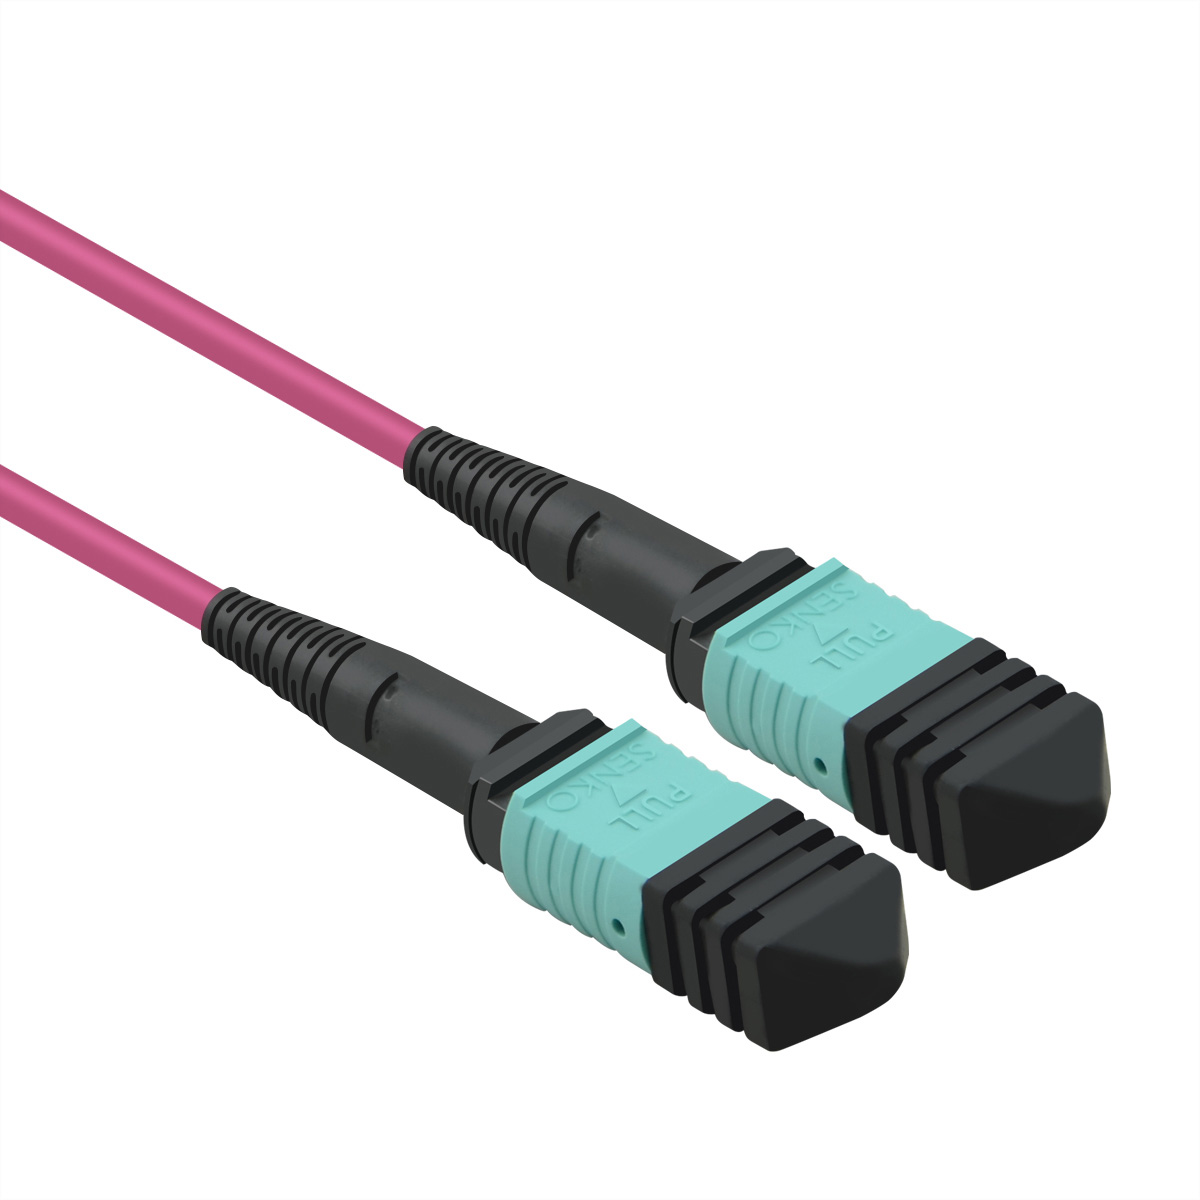 VALUE MPO-Trunk-Kabel 50/125µm OM4, MPO/MPO, 5 push-on), MPO m (multi-fibre